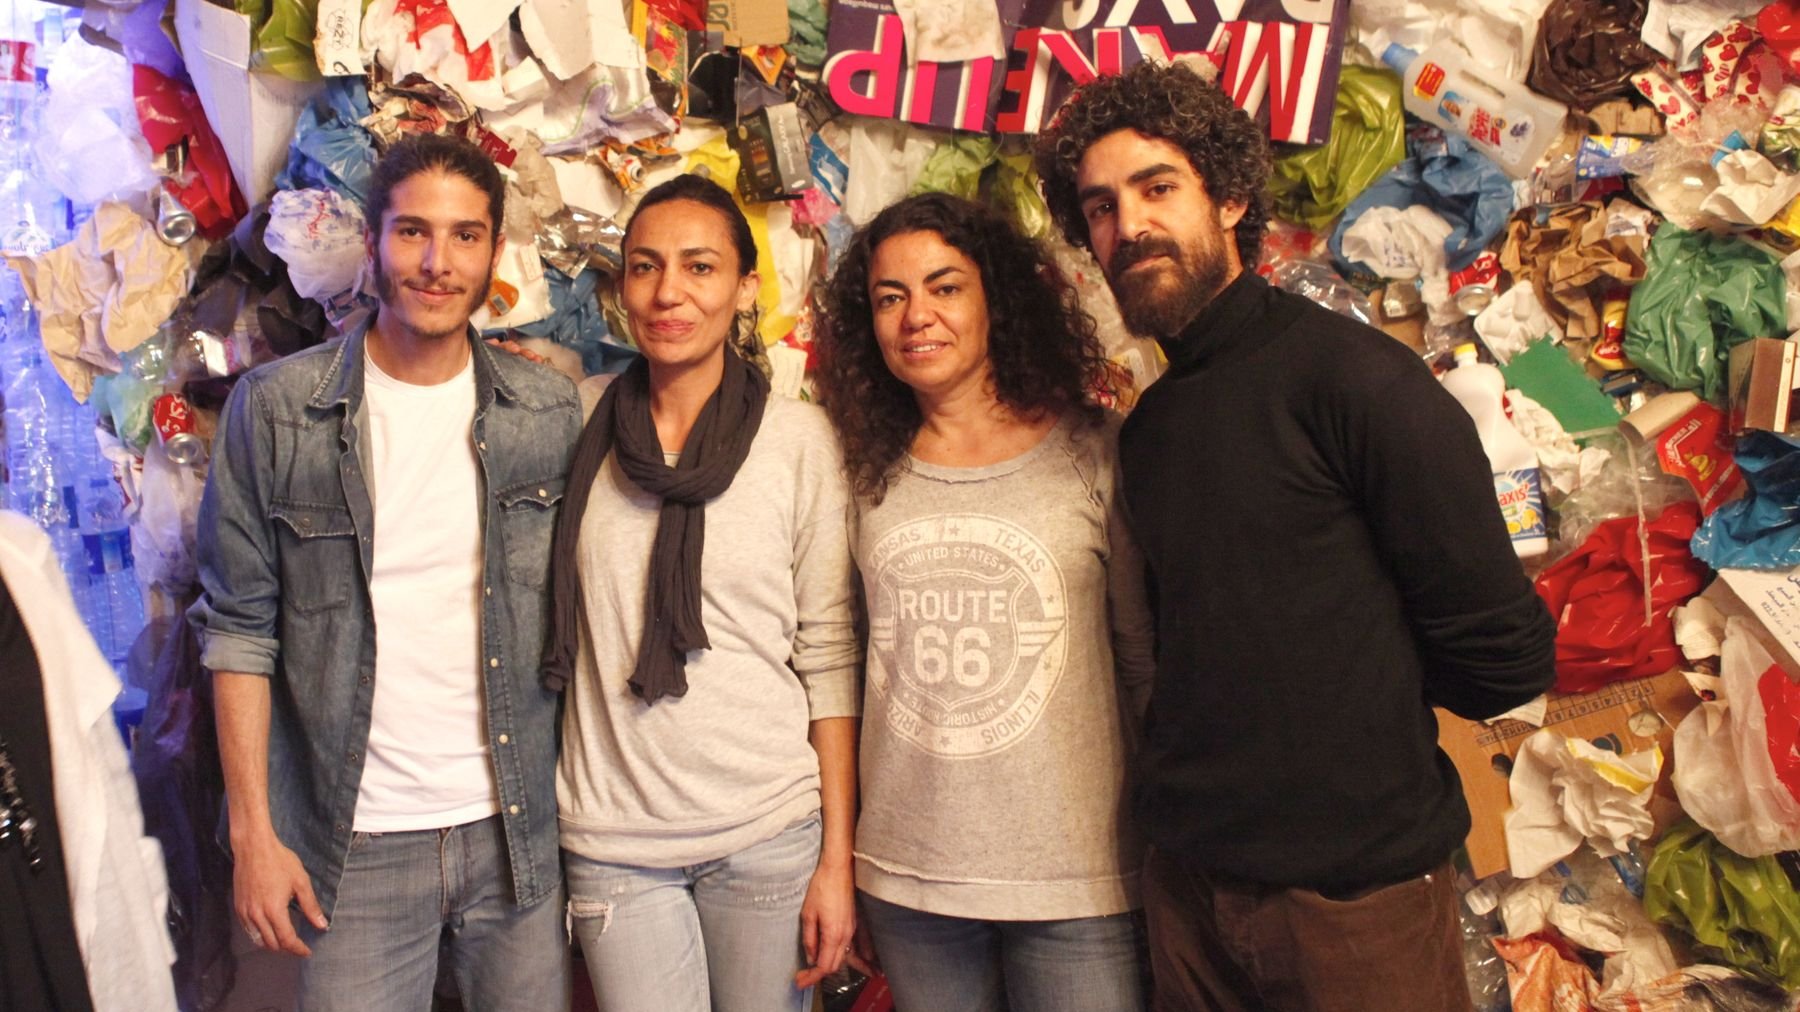 Othman Zine, Ghizlane Salhi, Katia Salhi et Saad Alami, quatre artistes marocains réunis autour d'une même cause, ont séduit les visiteurs de la Biennale.
